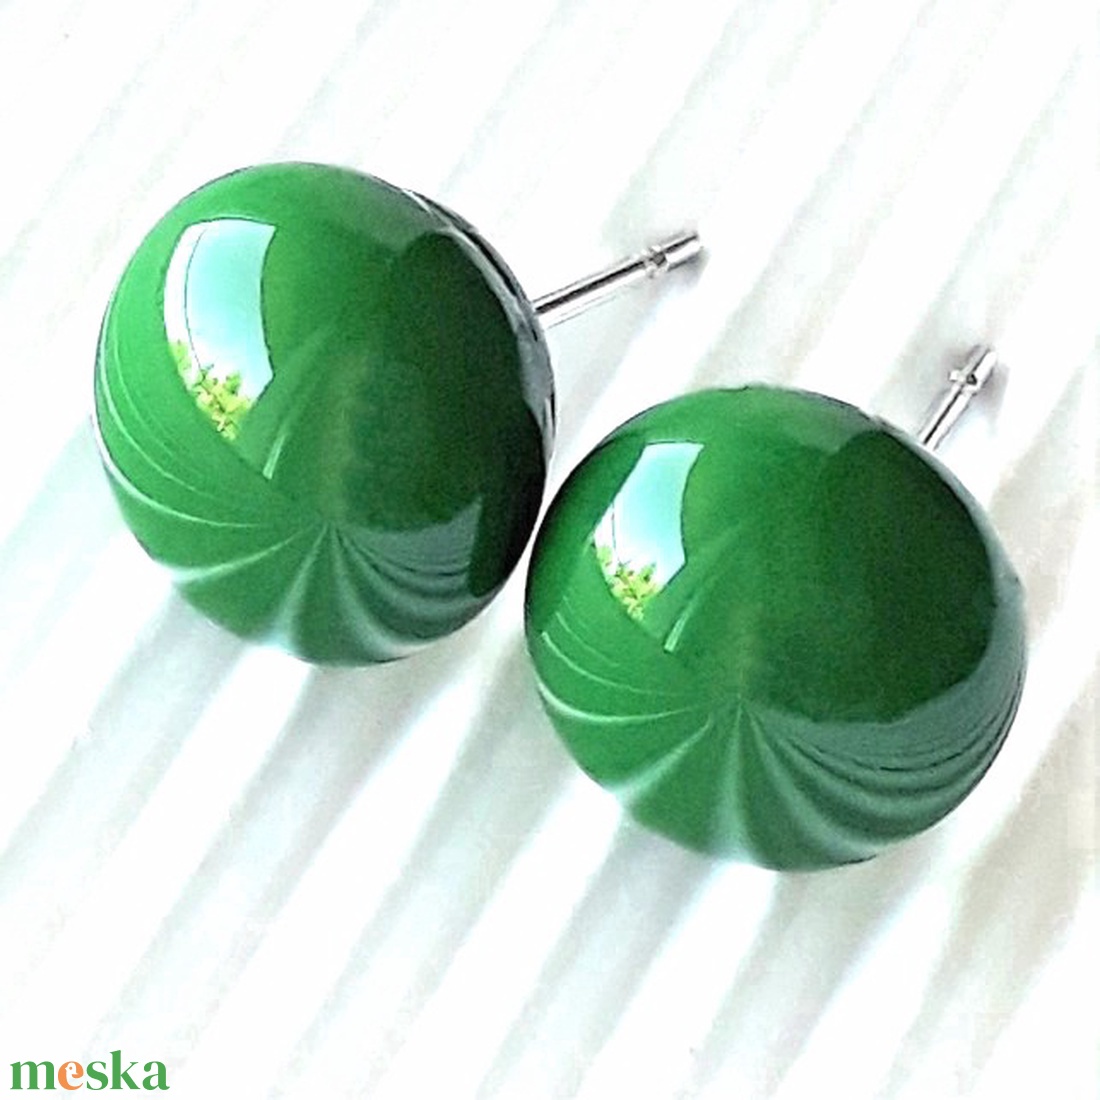 Smaragd zöld kerek üveg fülbevaló, ORVOSI FÉM bedugón, pötty, üvegékszer - ékszer - fülbevaló - pötty fülbevaló - Meska.hu